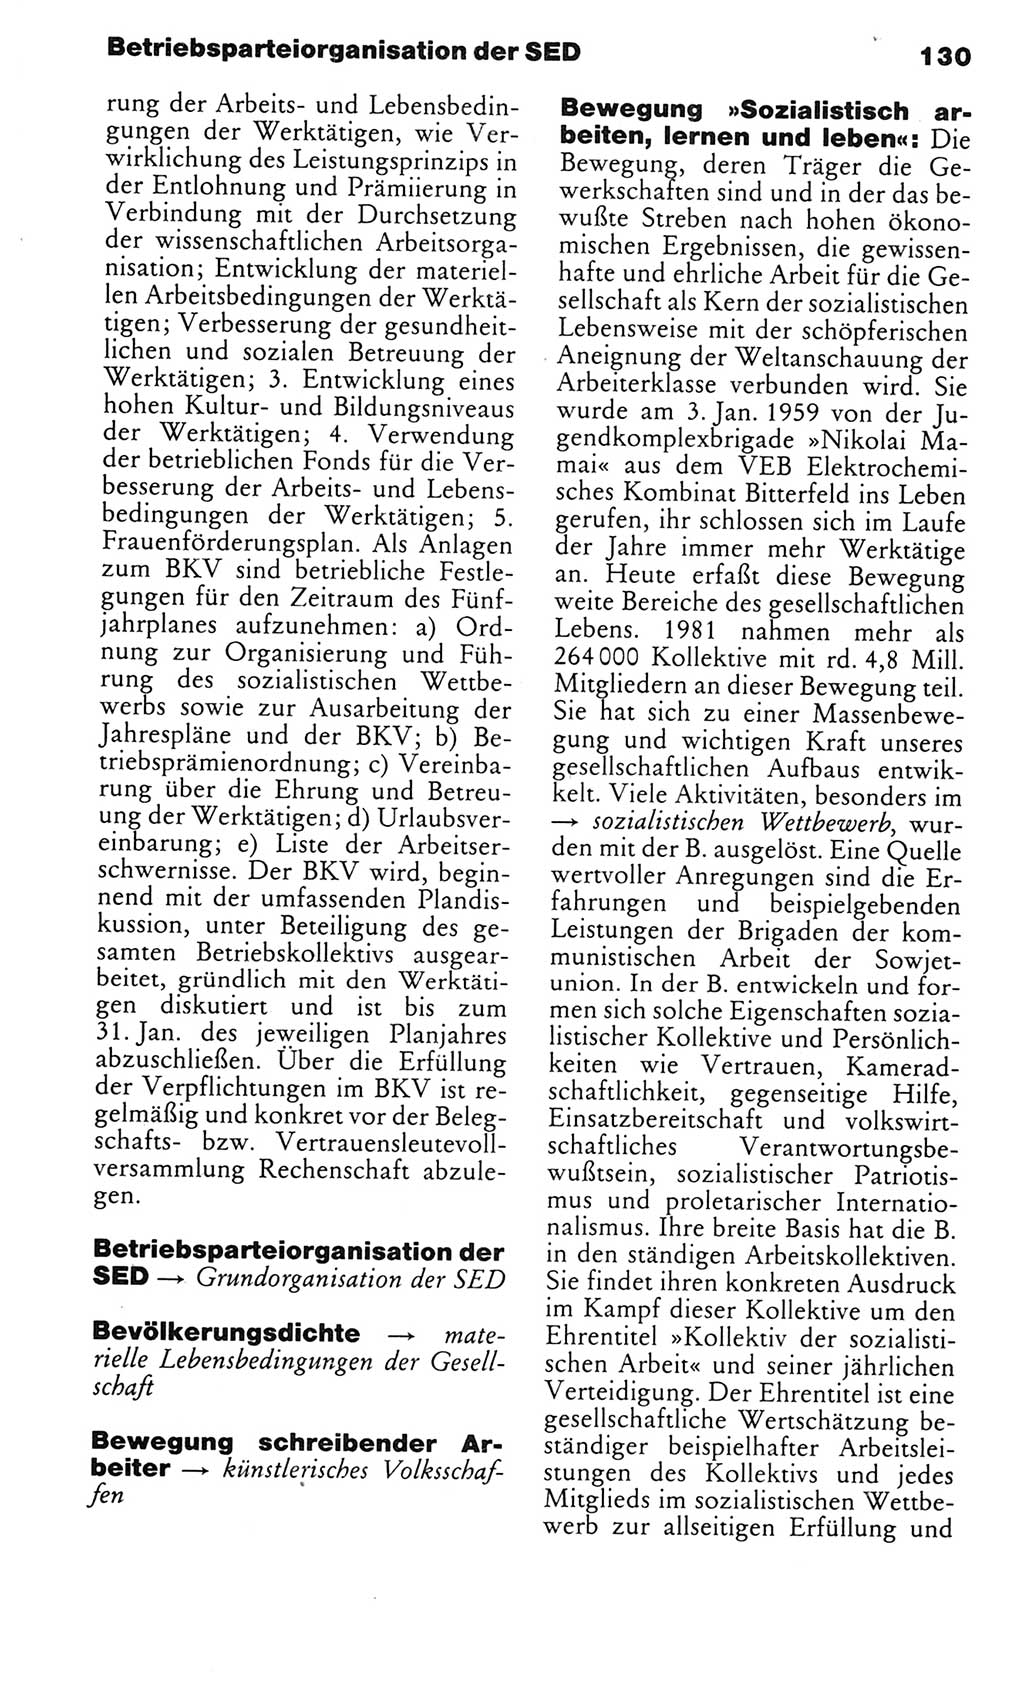 Kleines politisches Wörterbuch [Deutsche Demokratische Republik (DDR)] 1985, Seite 130 (Kl. pol. Wb. DDR 1985, S. 130)